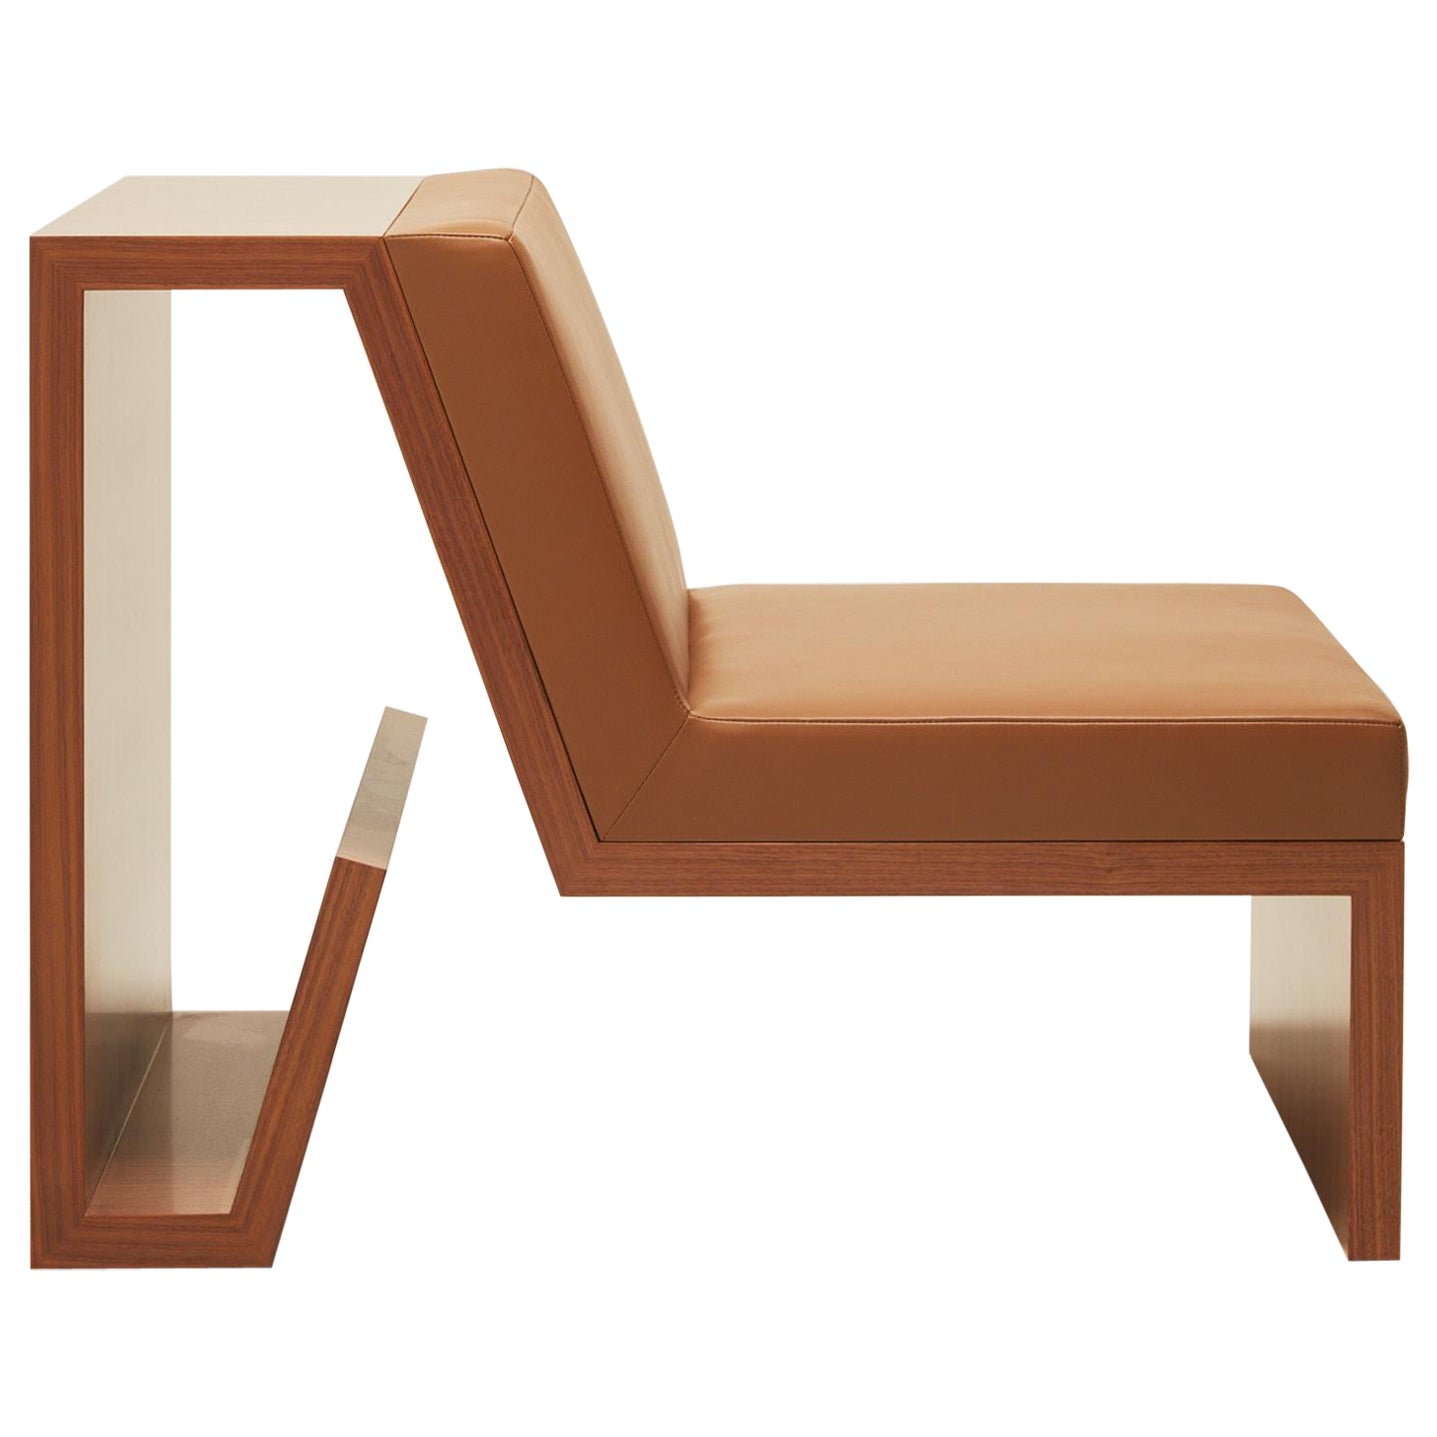 Continuous Chair - Handbearbeiteter Stuhl aus Holzfurnier und Lederpolsterung